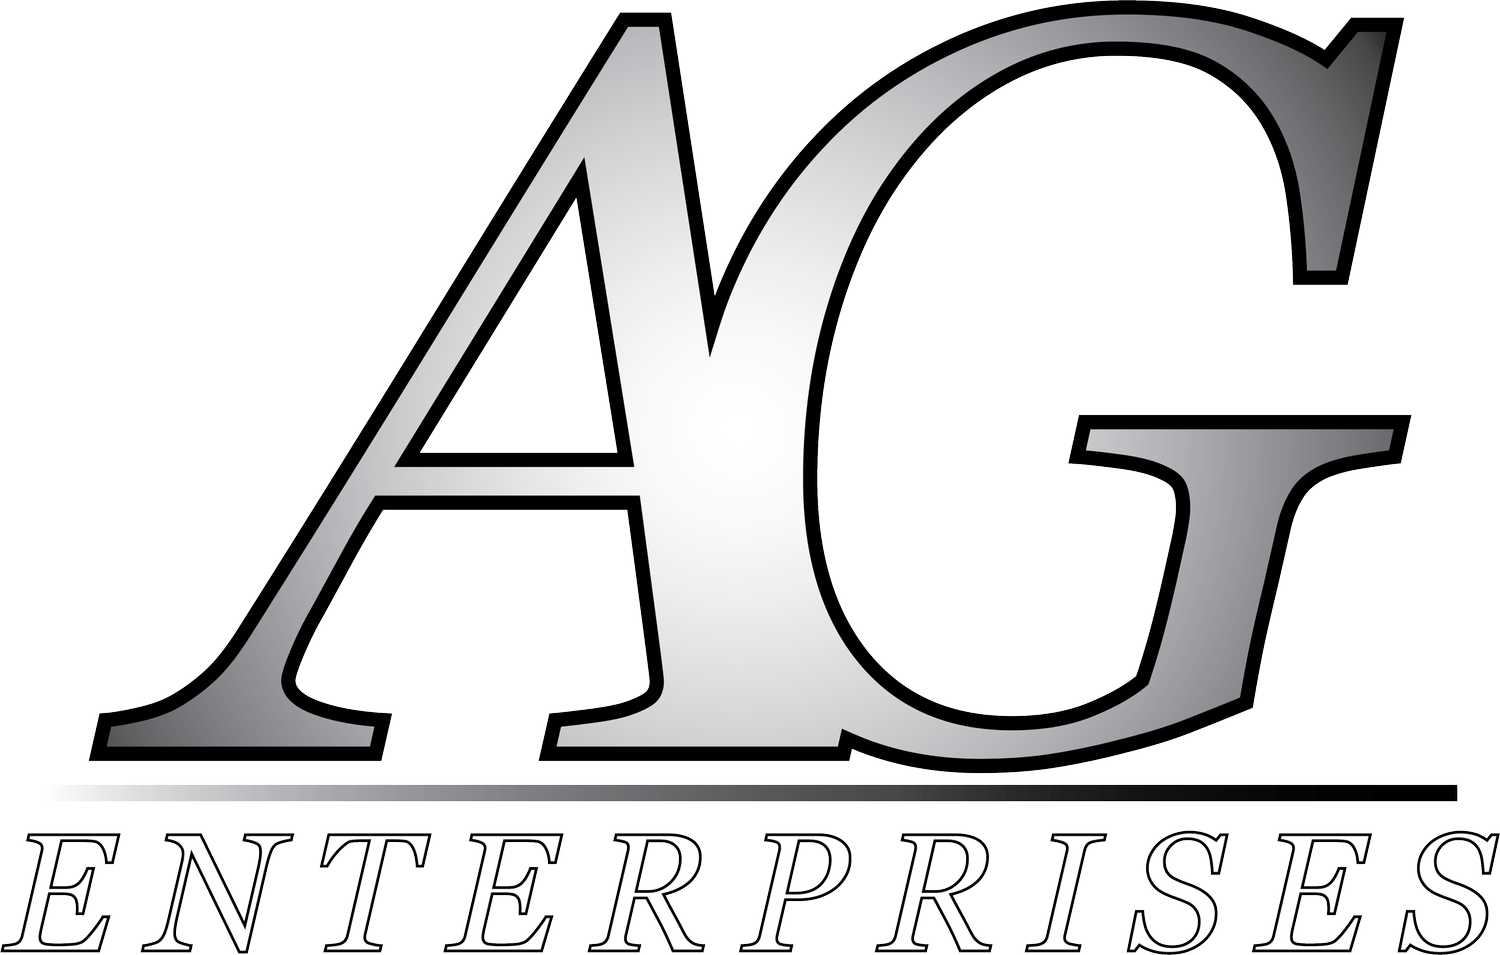 Argento Enterprises